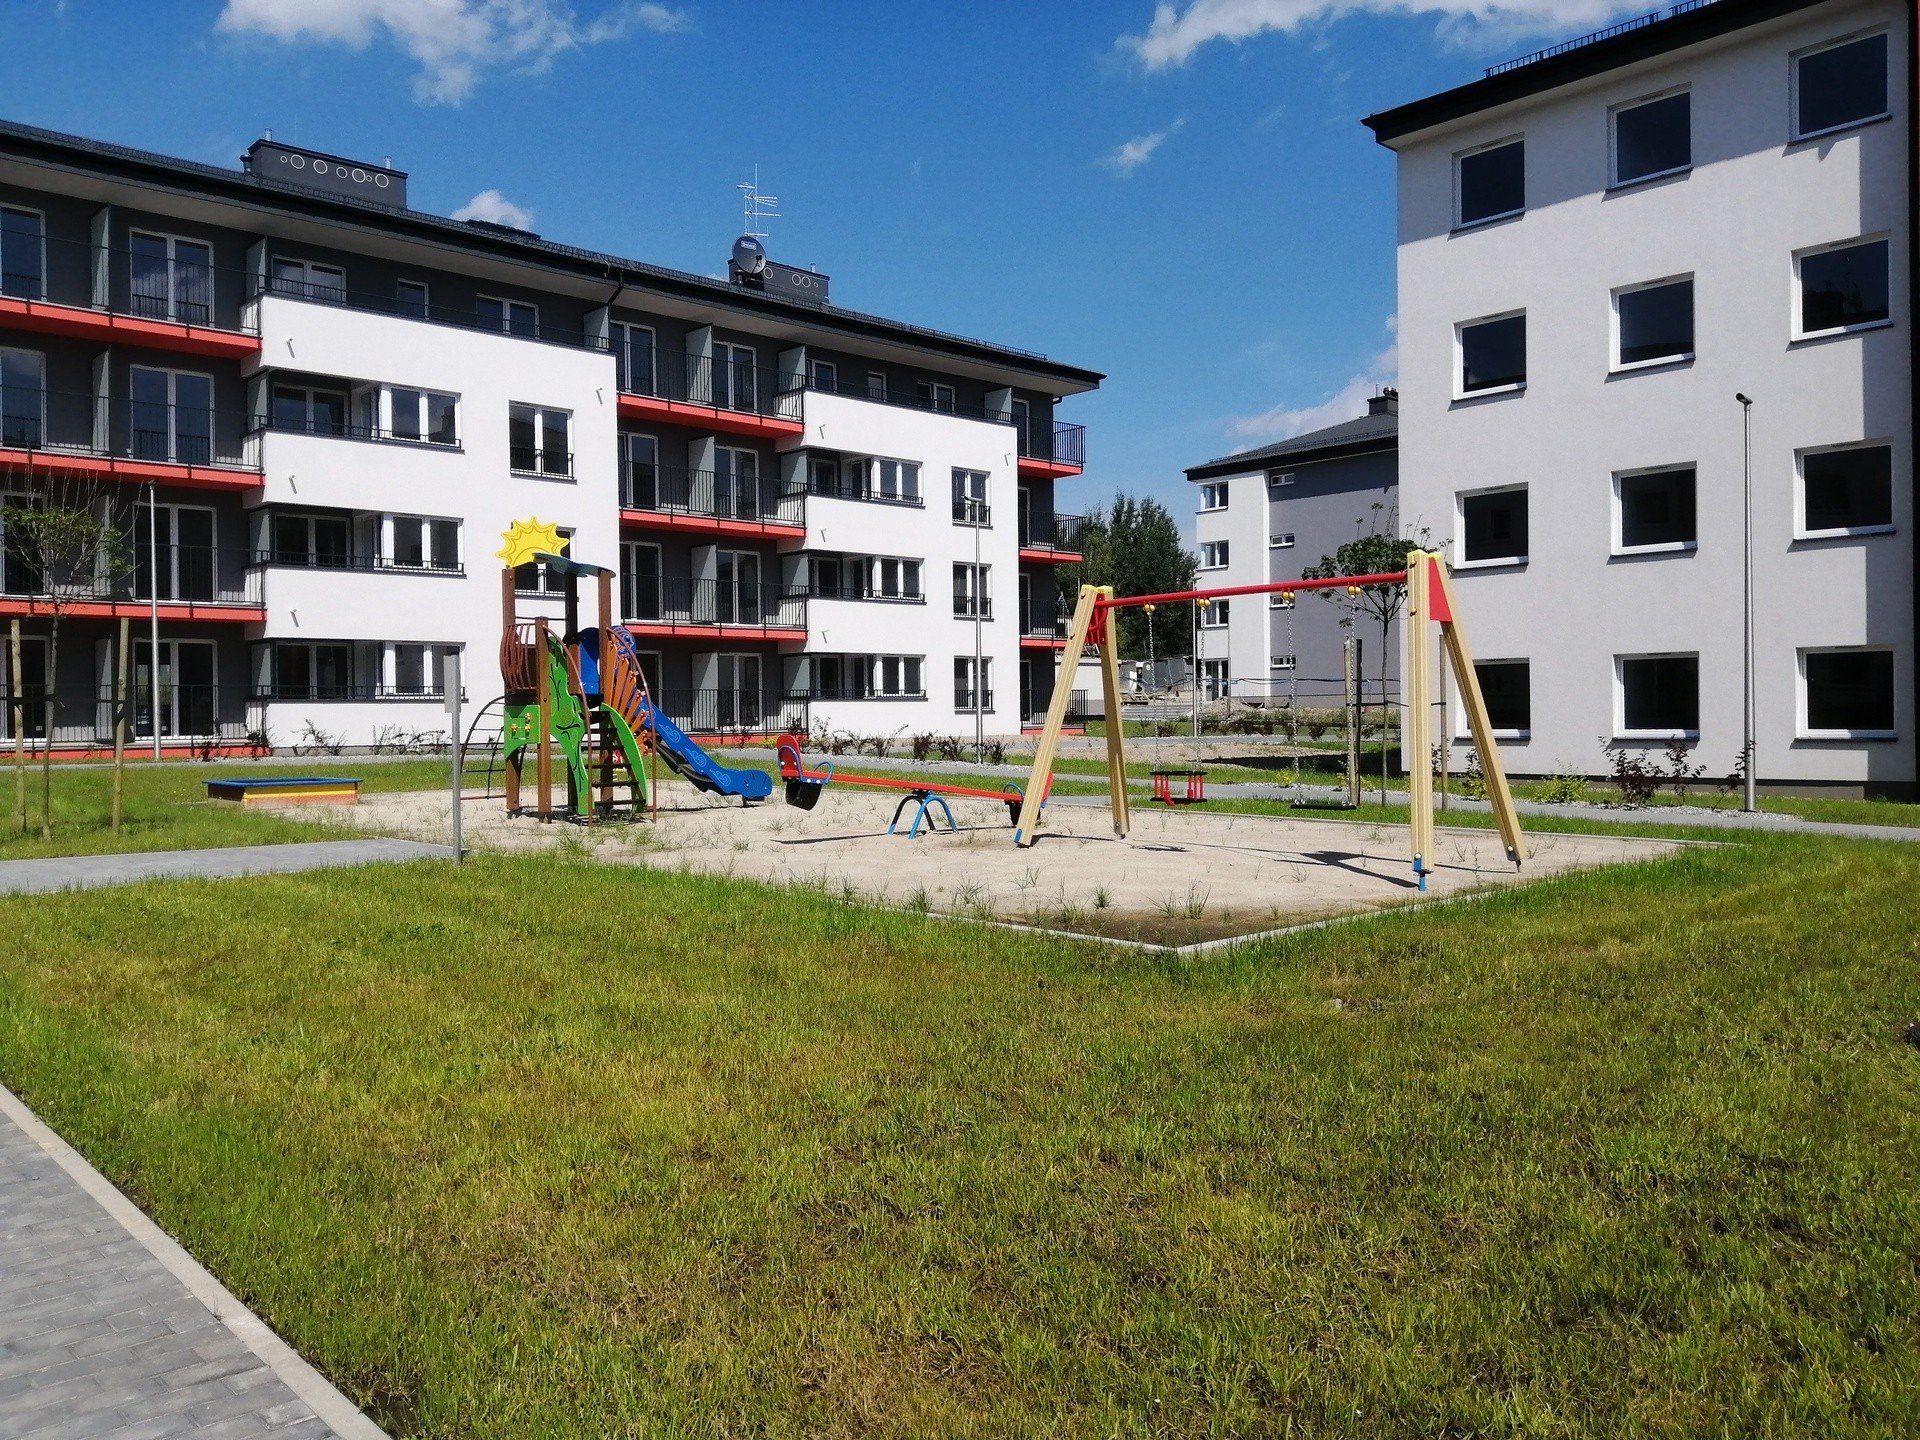 Mieszkanie Plus na krakowskich Klinach już praktycznie gotowe. Czeka na  lokatorów [ZDJĘCIA] 22.08.2021 | Gazeta Krakowska